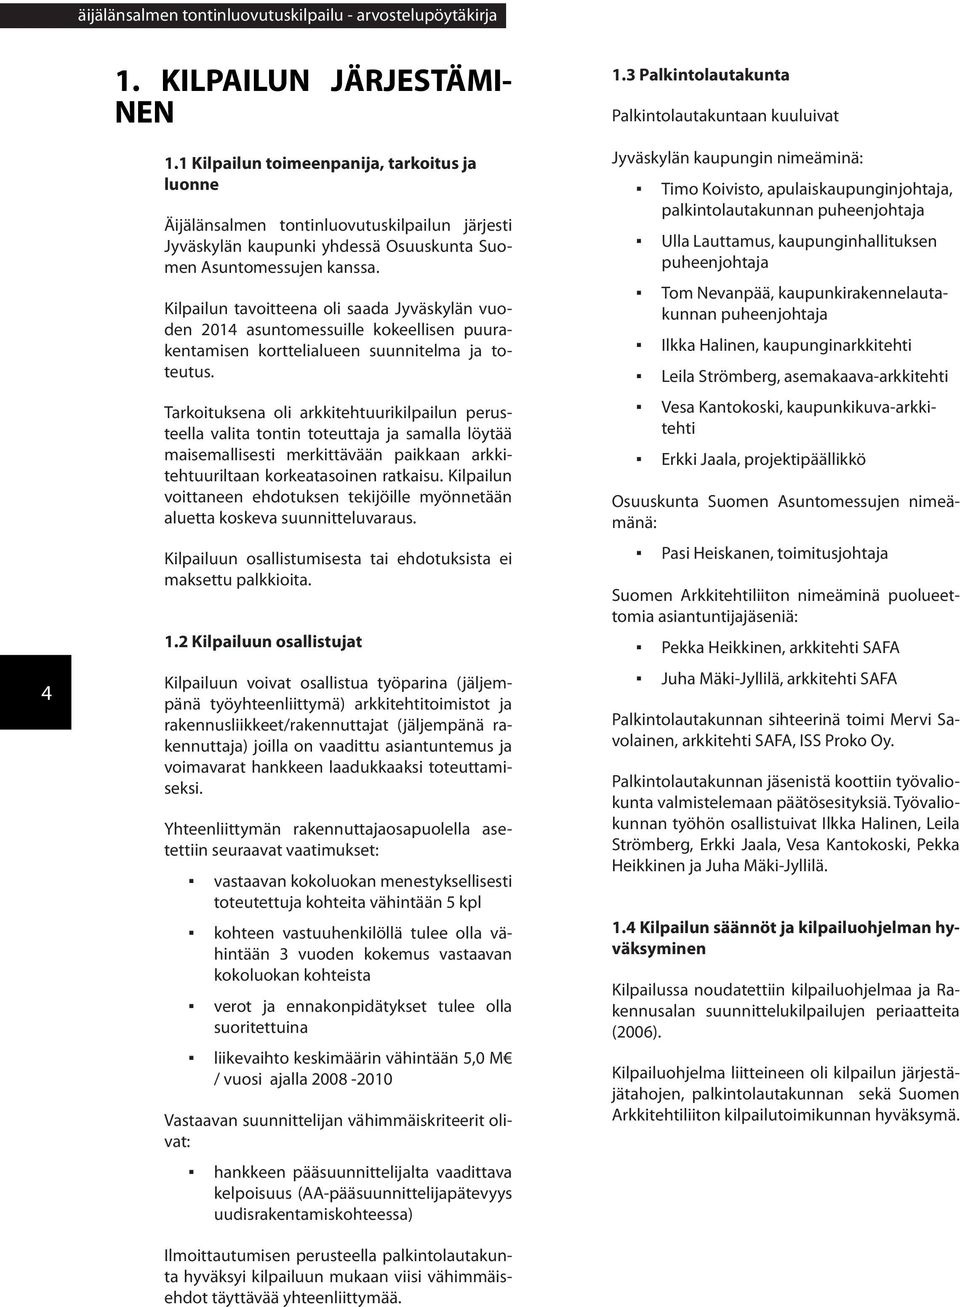 Kilpailun tavoitteena oli saada Jyväskylän vuoden 2014 asuntomessuille kokeellisen puurakentamisen korttelialueen suunnitelma ja toteutus.